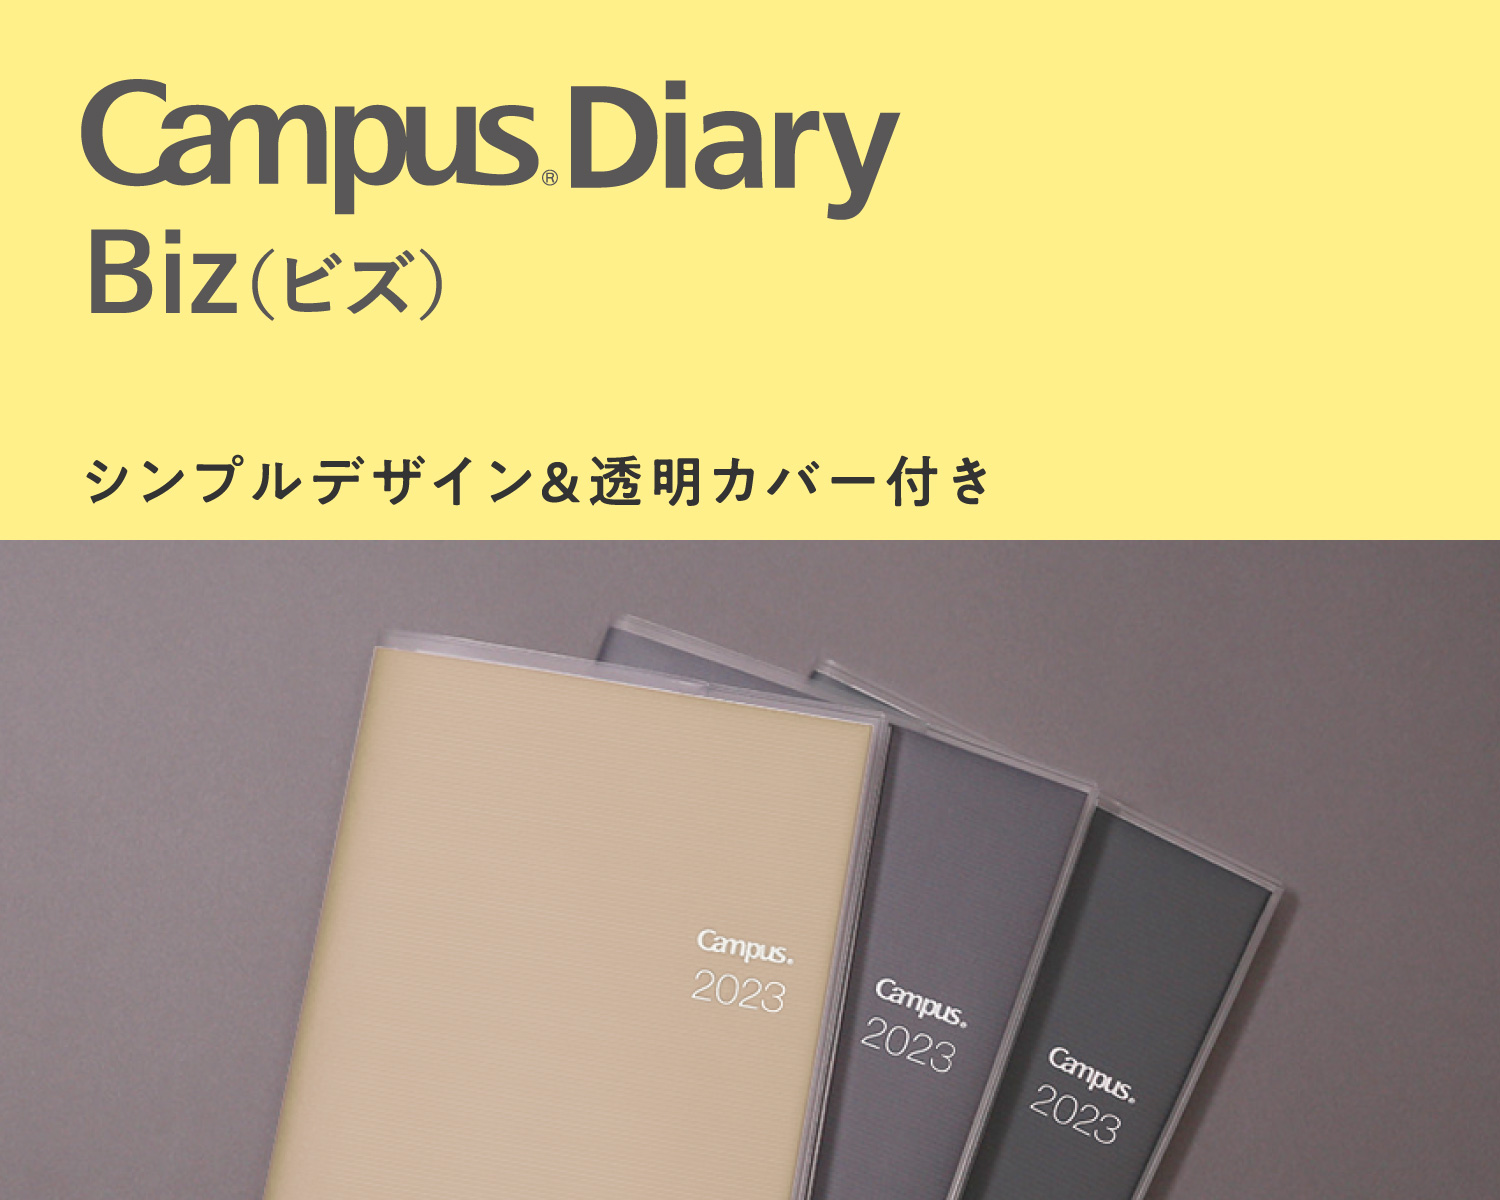 Campus Diary Bizタイプ